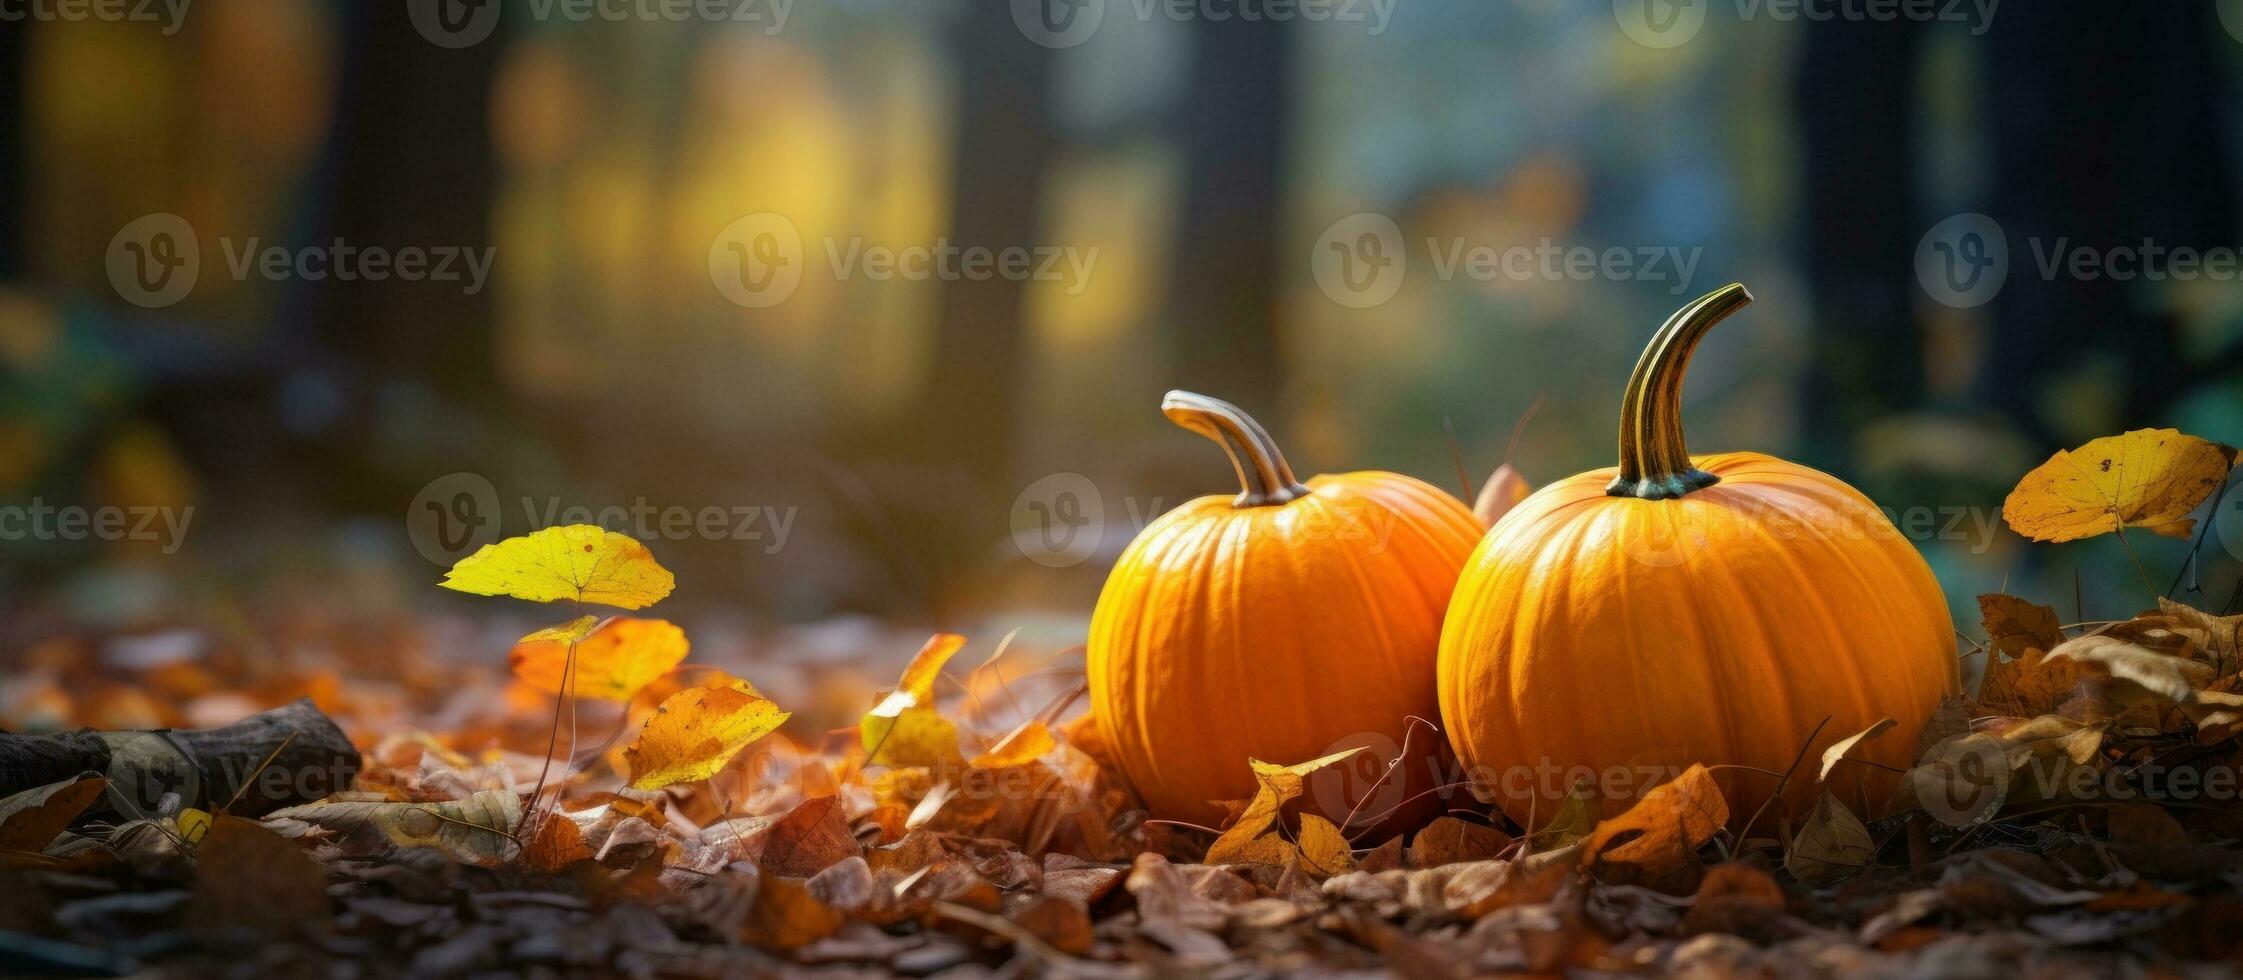 outono natural fundo com abóboras foto